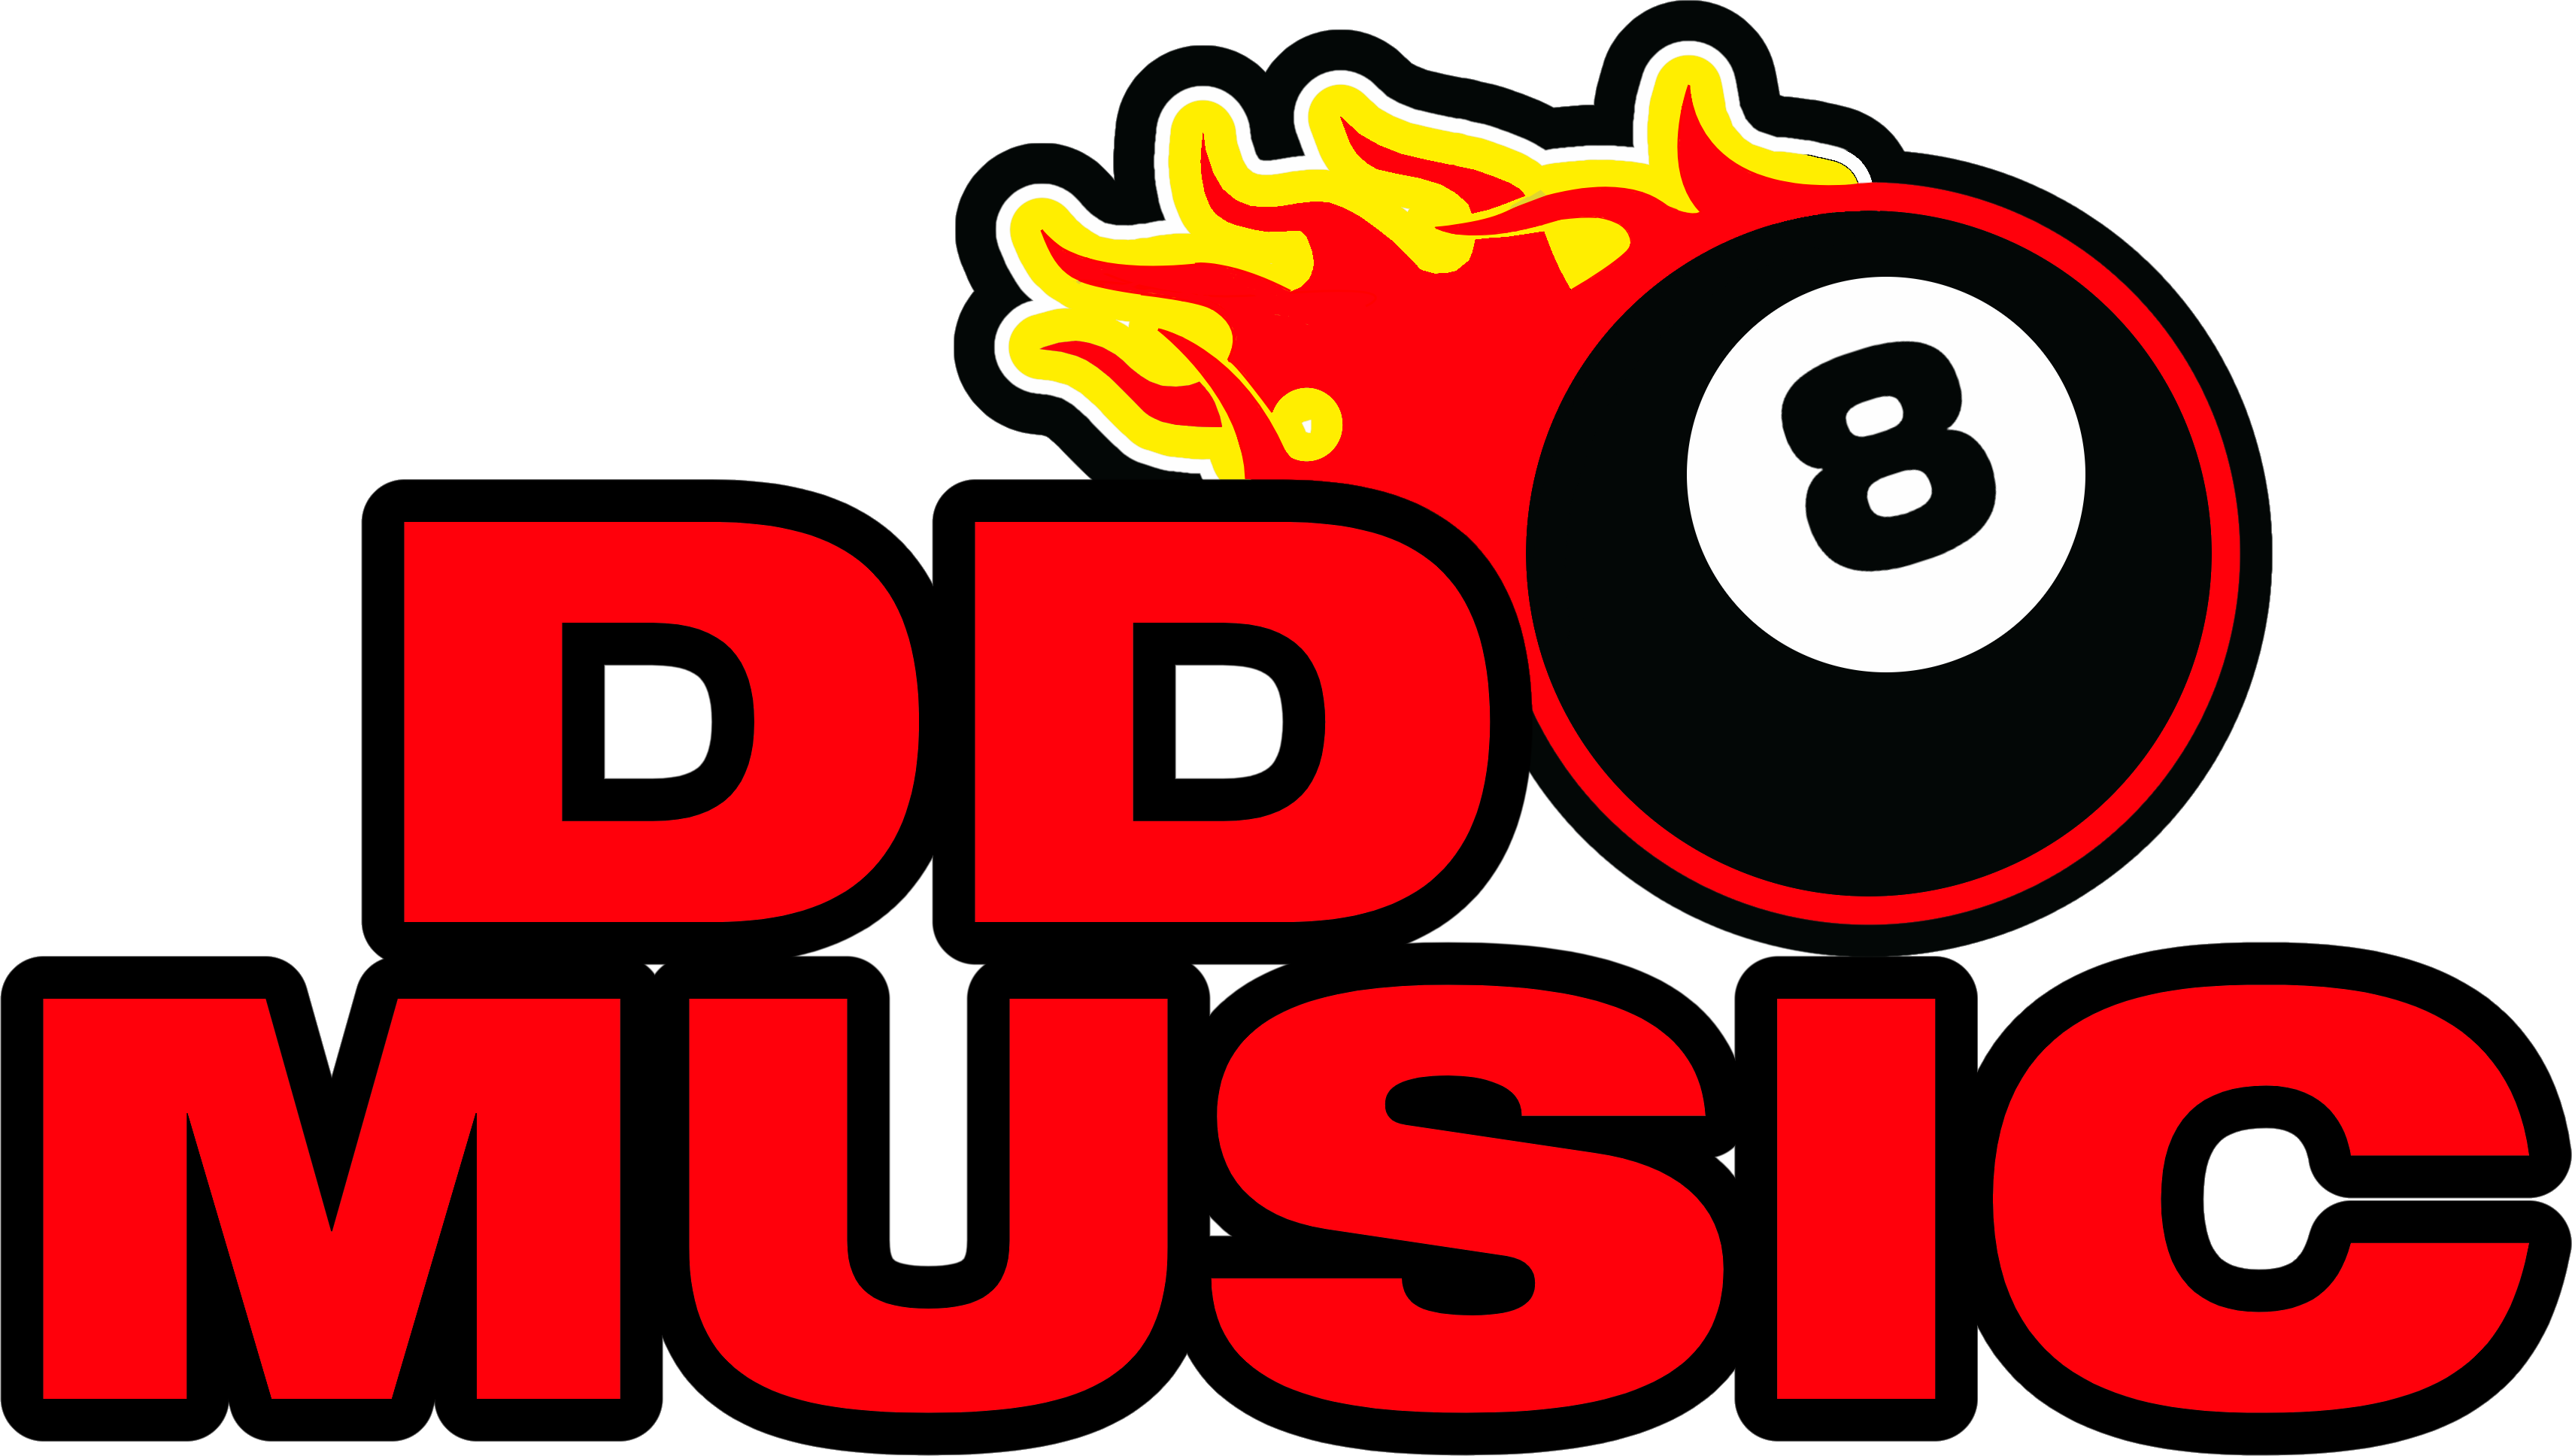 DD8 MUSIC